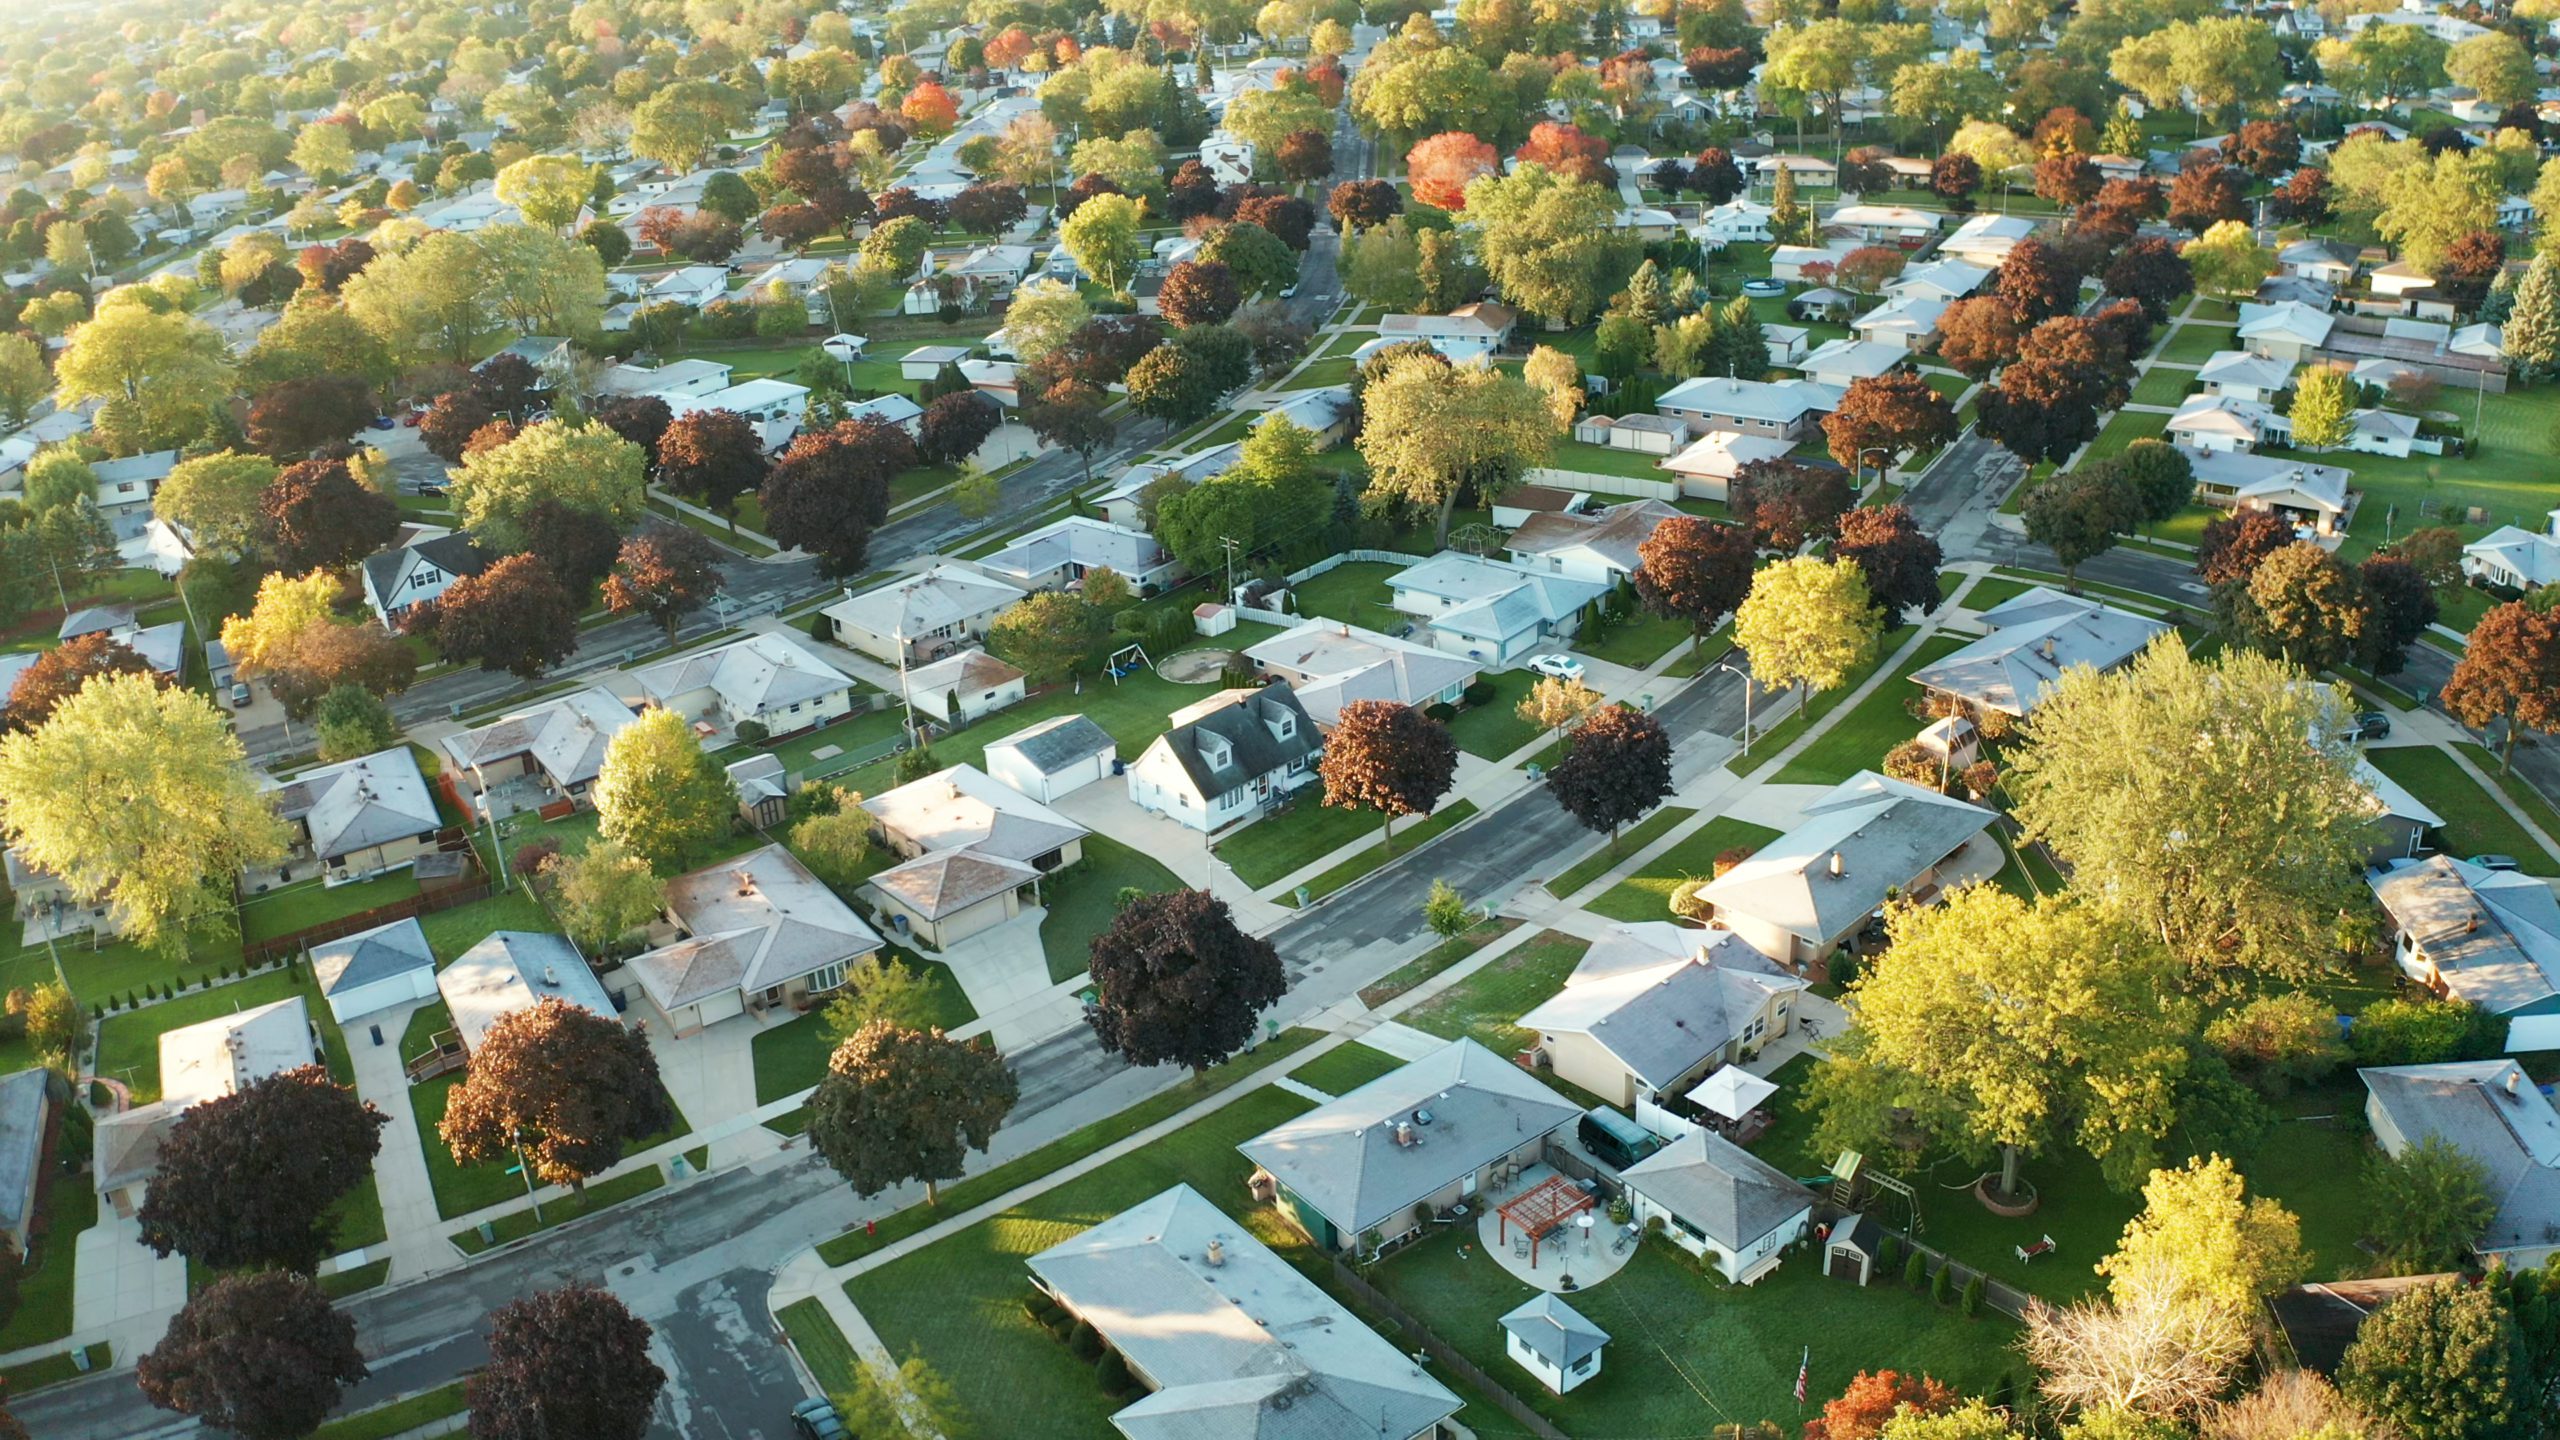 Vista aérea de casas residenciales en otoño (octubre). Barrio americano, suburbio. Bienes raíces, tomas de drones, puesta de sol, mañana soleada, luz solar, desde arriba